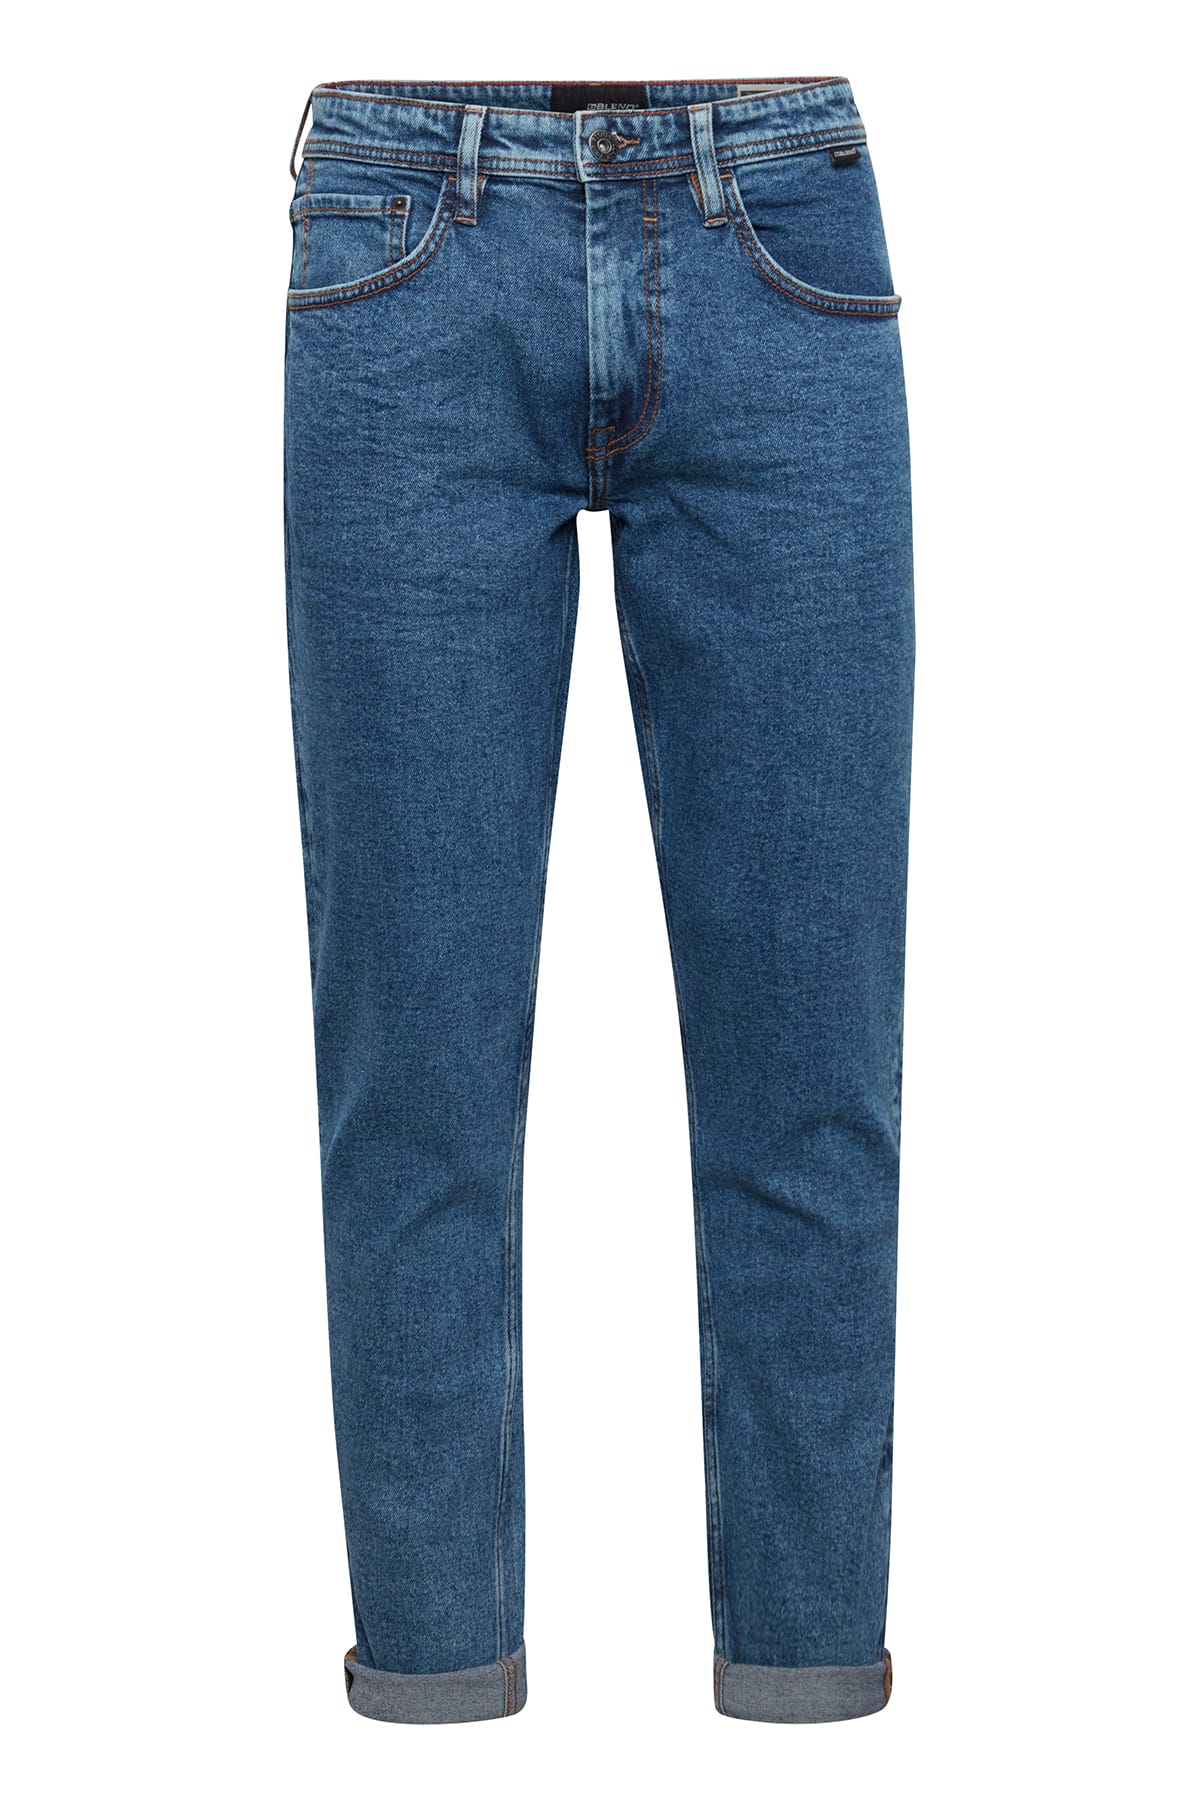 Jeans Twister fit - PP NOOS Denim middle blue Jeans Blend 